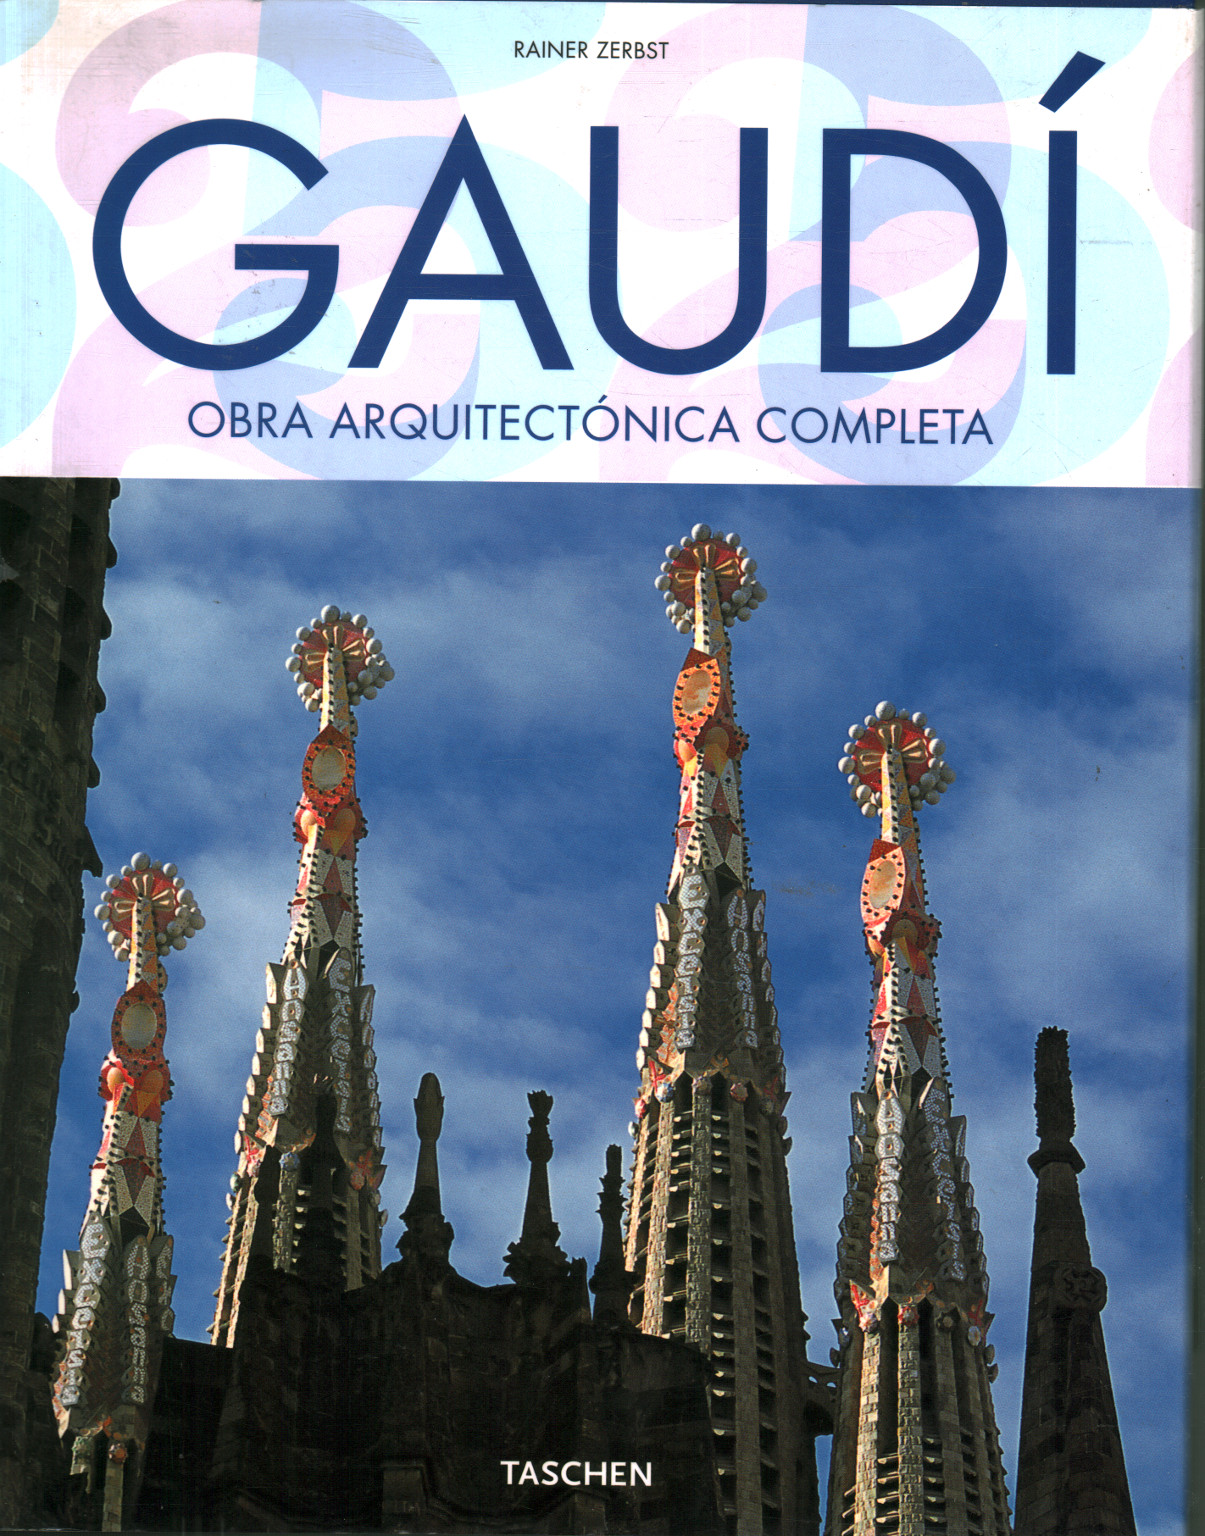 Gaudì 1852-1926. Obra arquitectonica completa, Rainer Zerbst